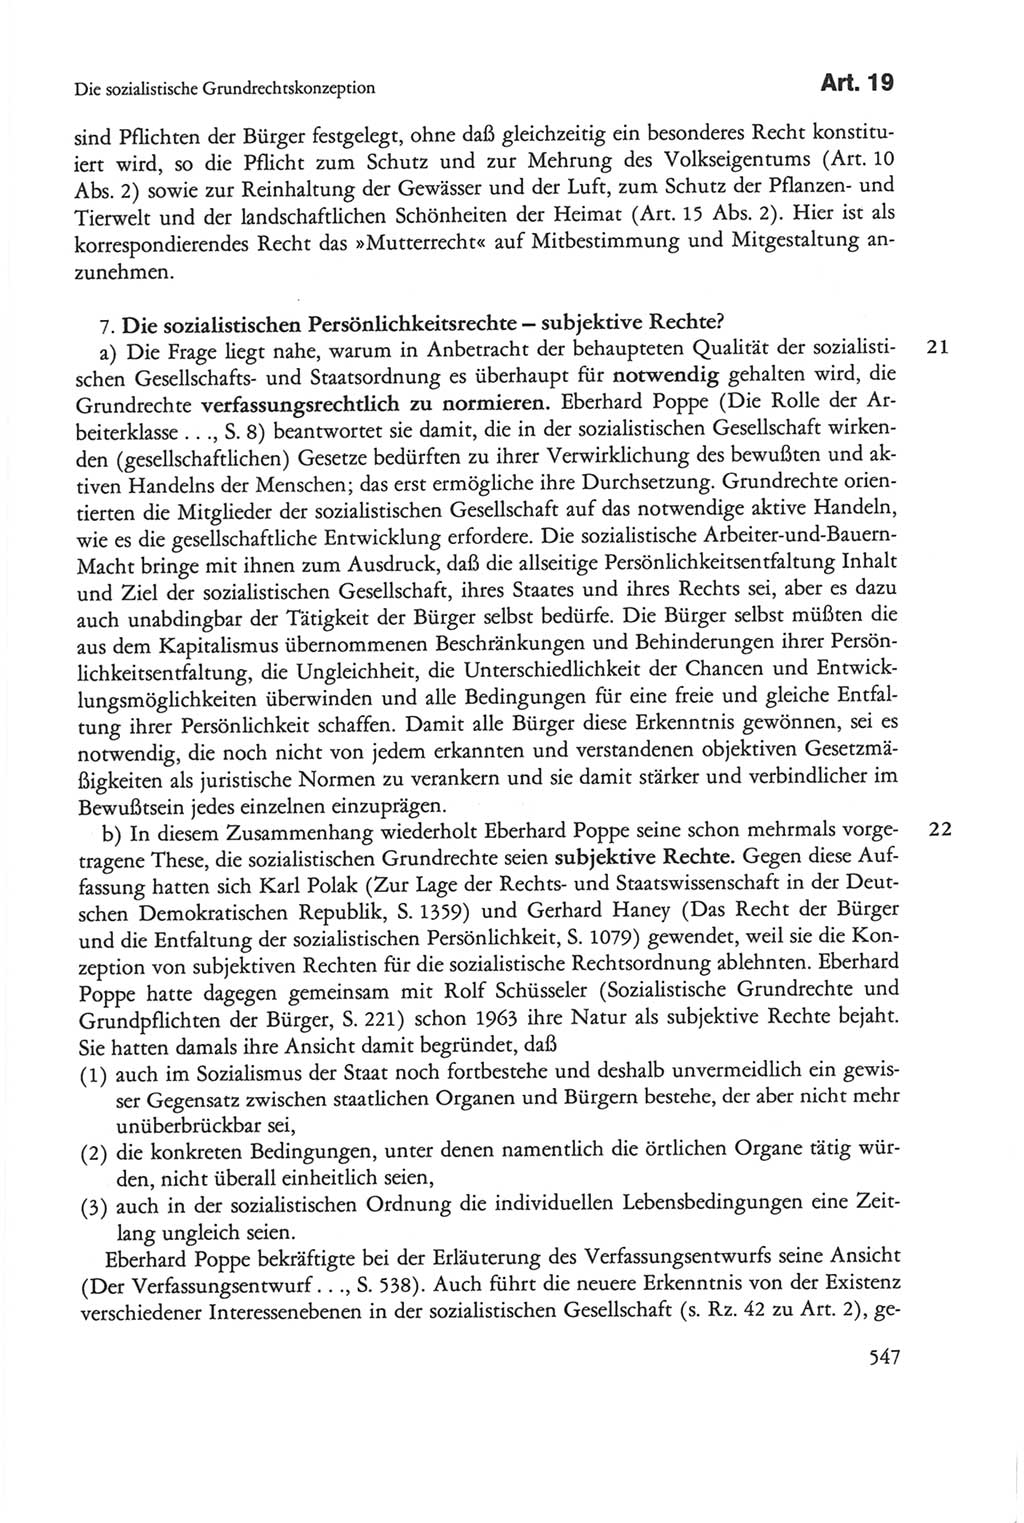 Die sozialistische Verfassung der Deutschen Demokratischen Republik (DDR), Kommentar mit einem Nachtrag 1997, Seite 547 (Soz. Verf. DDR Komm. Nachtr. 1997, S. 547)